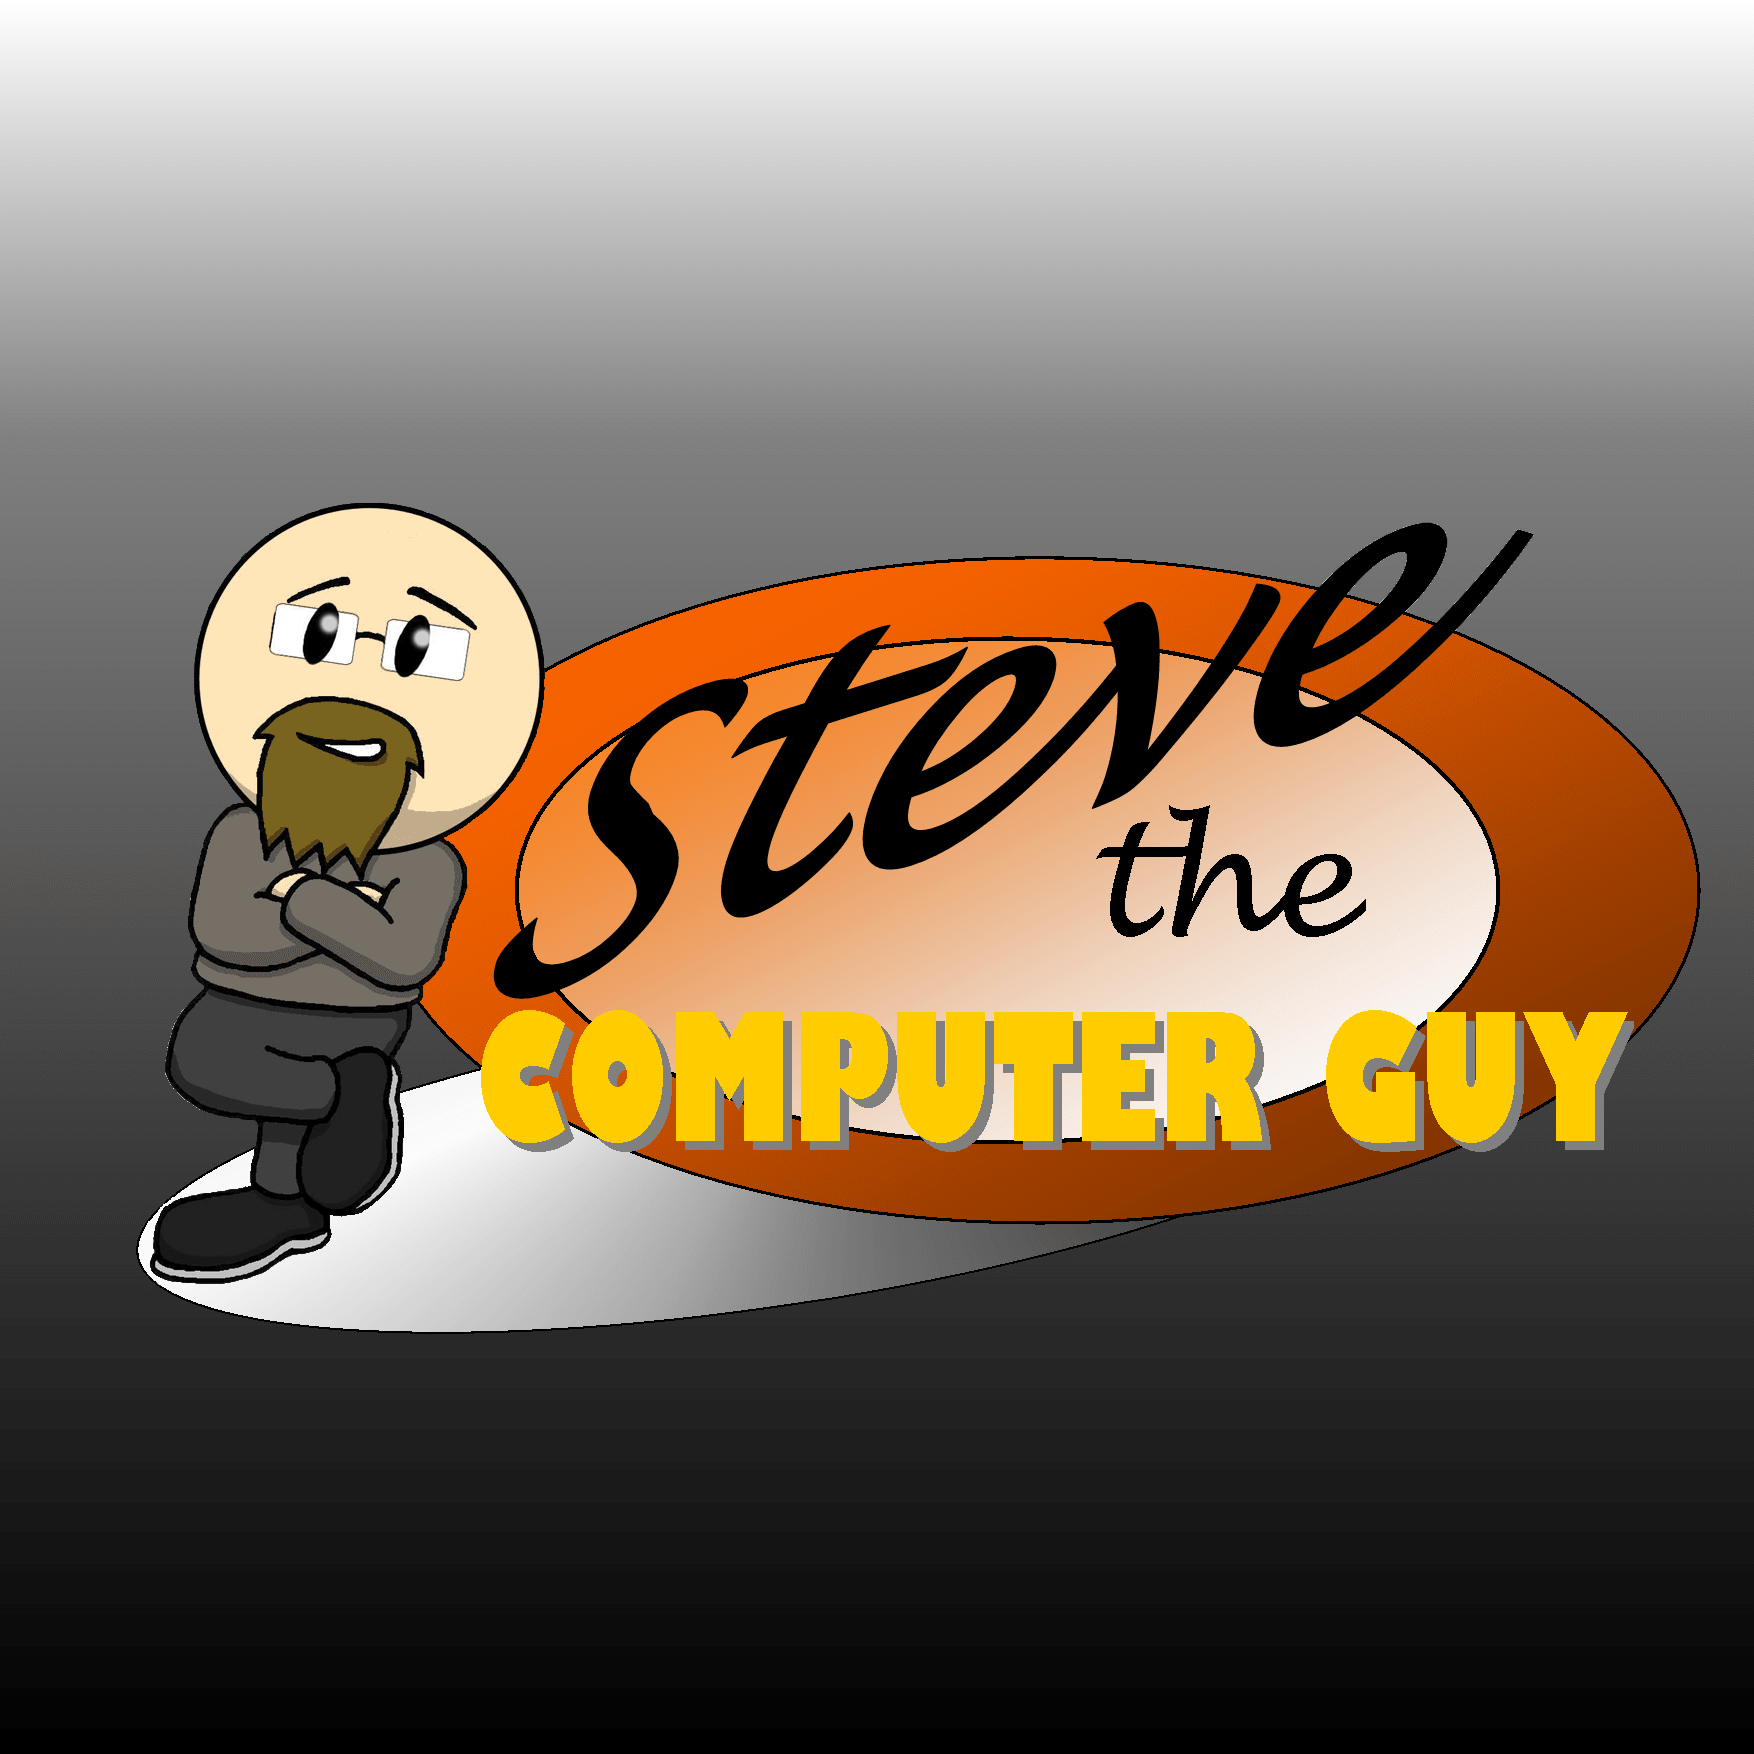 Steve the Computer Guy Logo